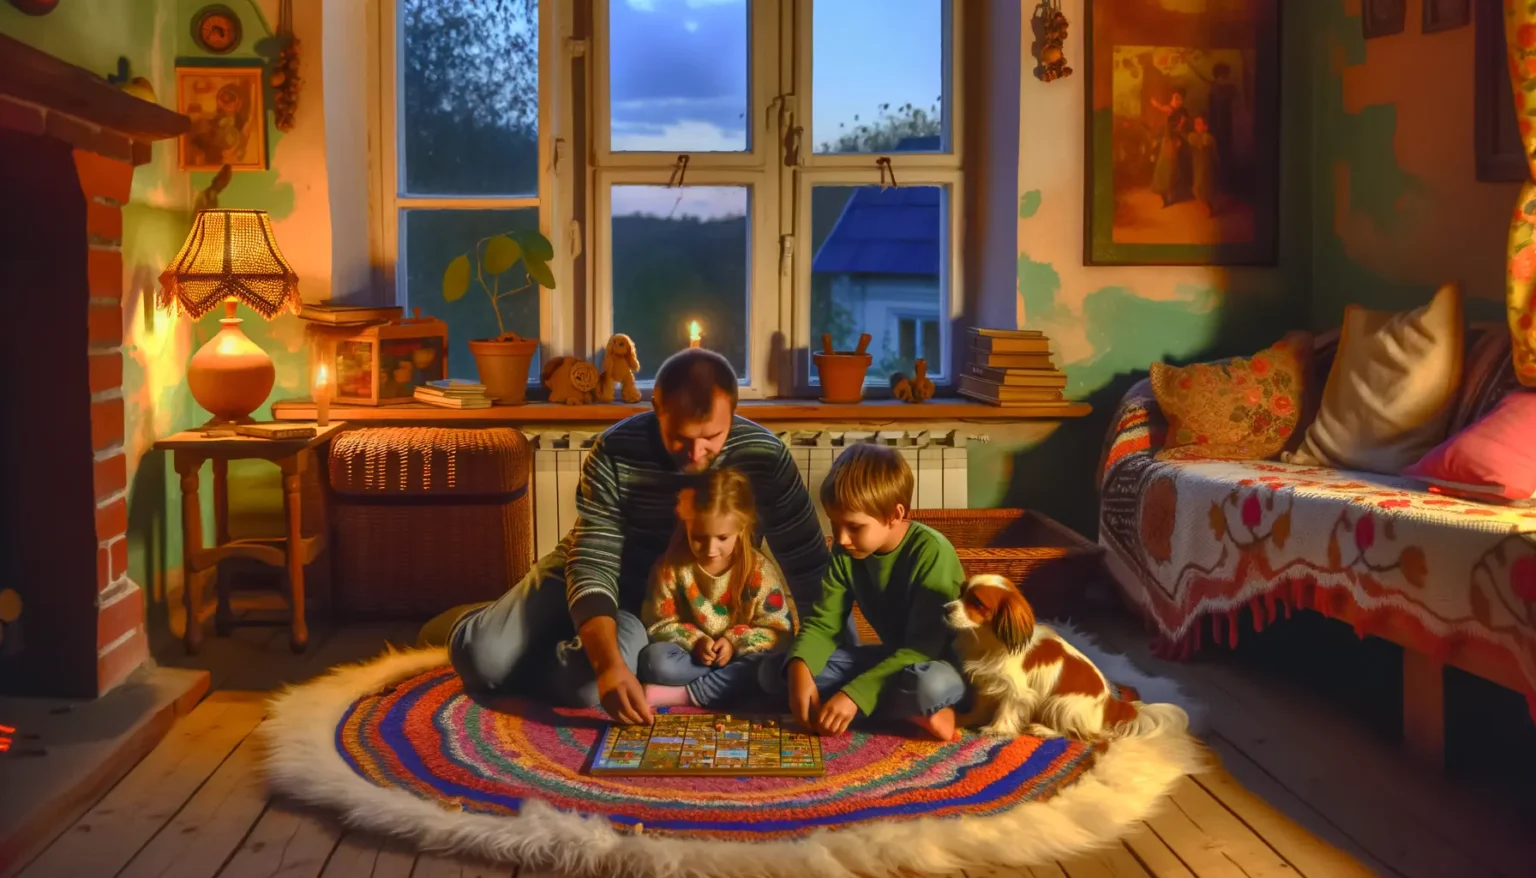 Eine Familie verbringt gemeinsam Zeit beim Spielen eines Brettspiels auf einem bunten Teppich im Wohnzimmer. Ein Erwachsener und zwei Kinder, begleitet von einem kleinen Hund, sind um das Spiel versammelt, während sanftes Licht von einer Tischlampe und dem Kamin das Zimmer erleuchtet. Draußen ist es bereits dunkel, und durch das Fenster ist der Abendhimmel zu sehen. Die gemütliche Einrichtung mit Pflanzen, Büchern und heimeliger Dekoration vermittelt eine warme und einladende Atmosphäre.